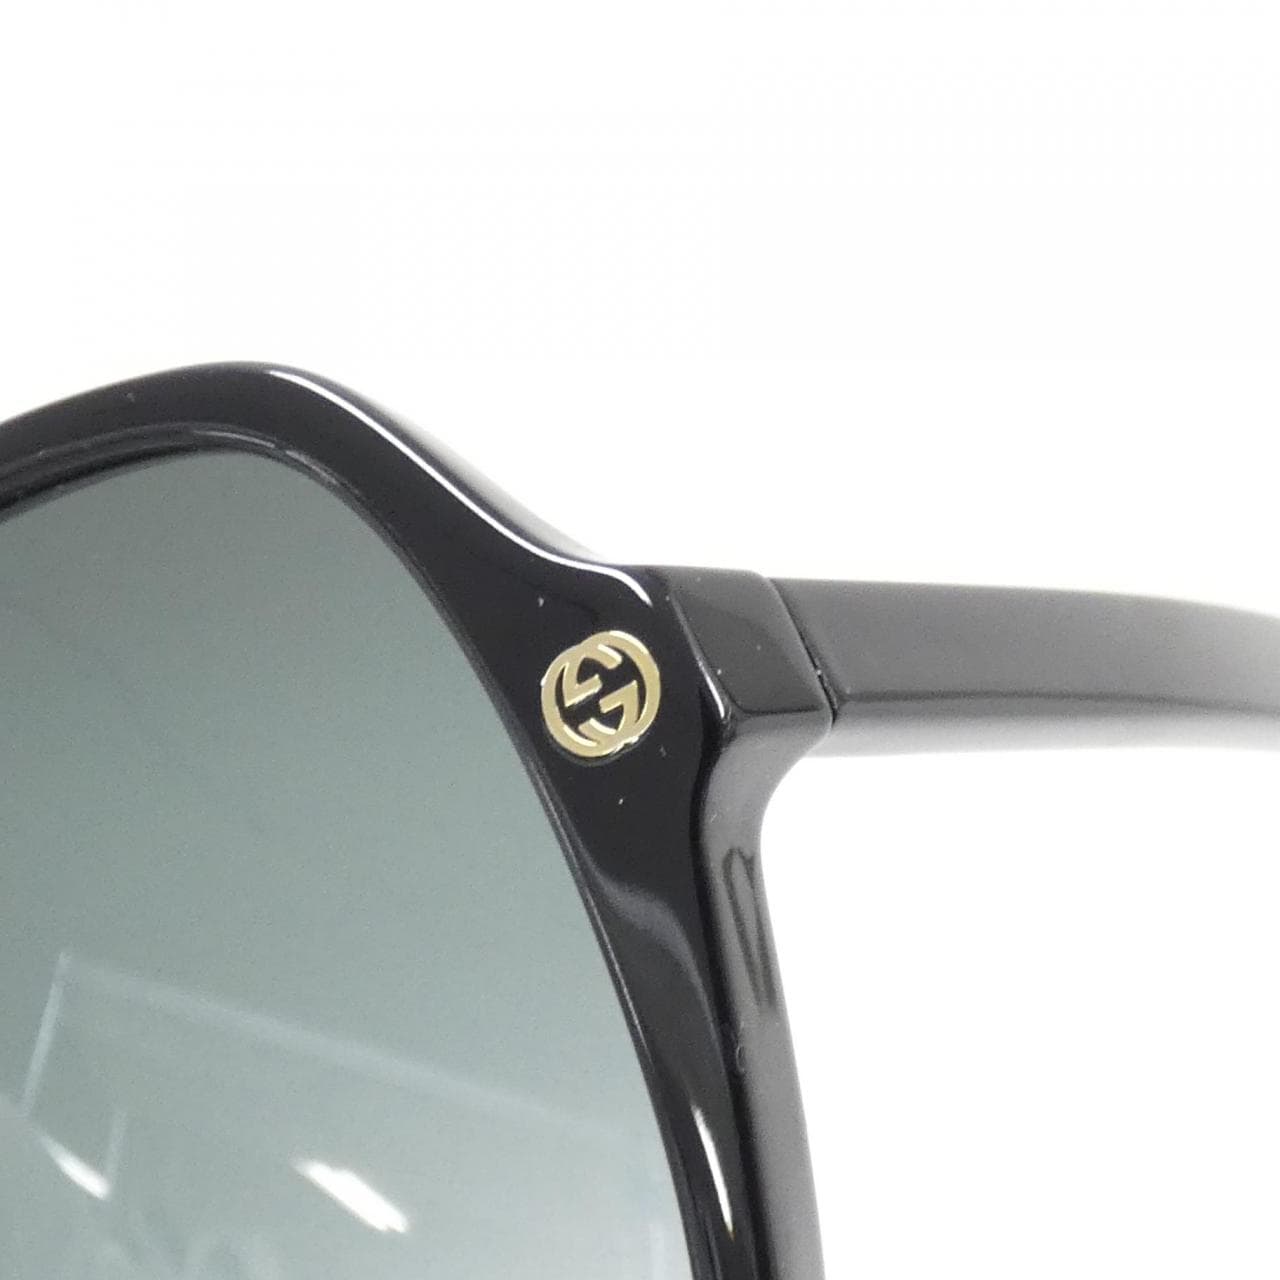 [BRAND NEW] Gucci 0092S Sunglasses